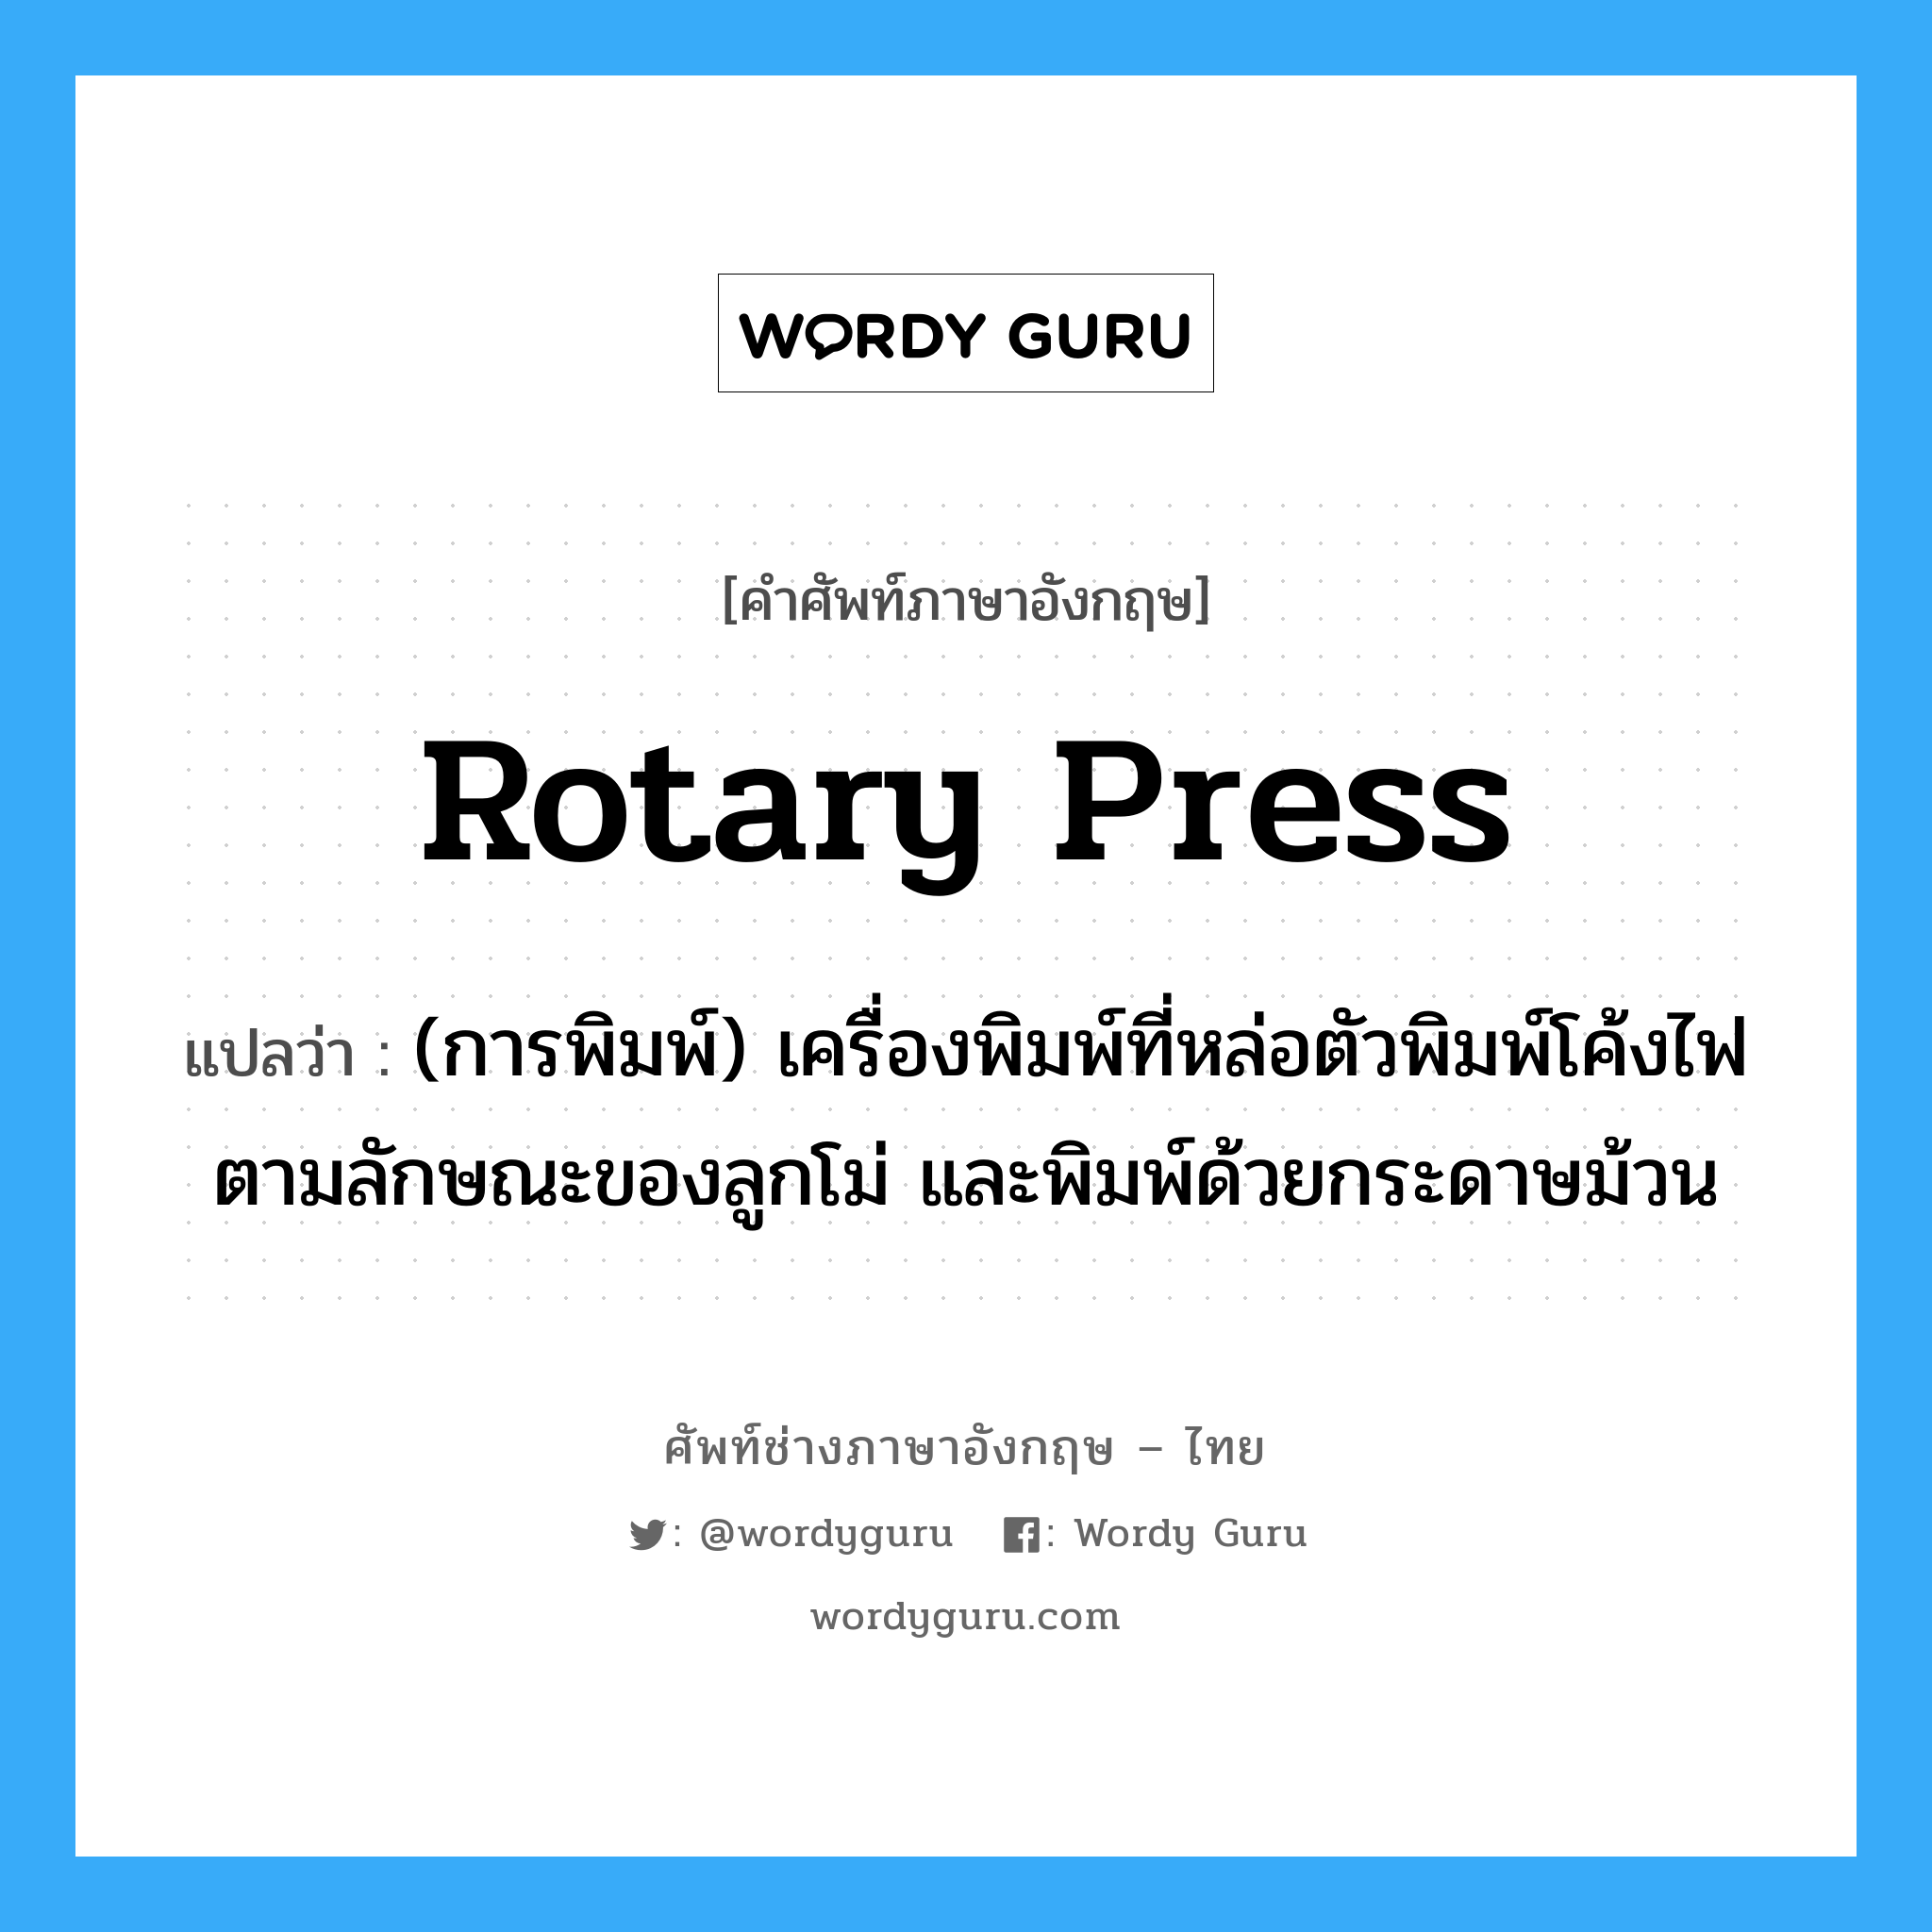 rotary press แปลว่า?, คำศัพท์ช่างภาษาอังกฤษ - ไทย rotary press คำศัพท์ภาษาอังกฤษ rotary press แปลว่า (การพิมพ์) เครื่องพิมพ์ที่หล่อตัวพิมพ์โค้งไฟตามลักษณะของลูกโม่ และพิมพ์ด้วยกระดาษม้วน